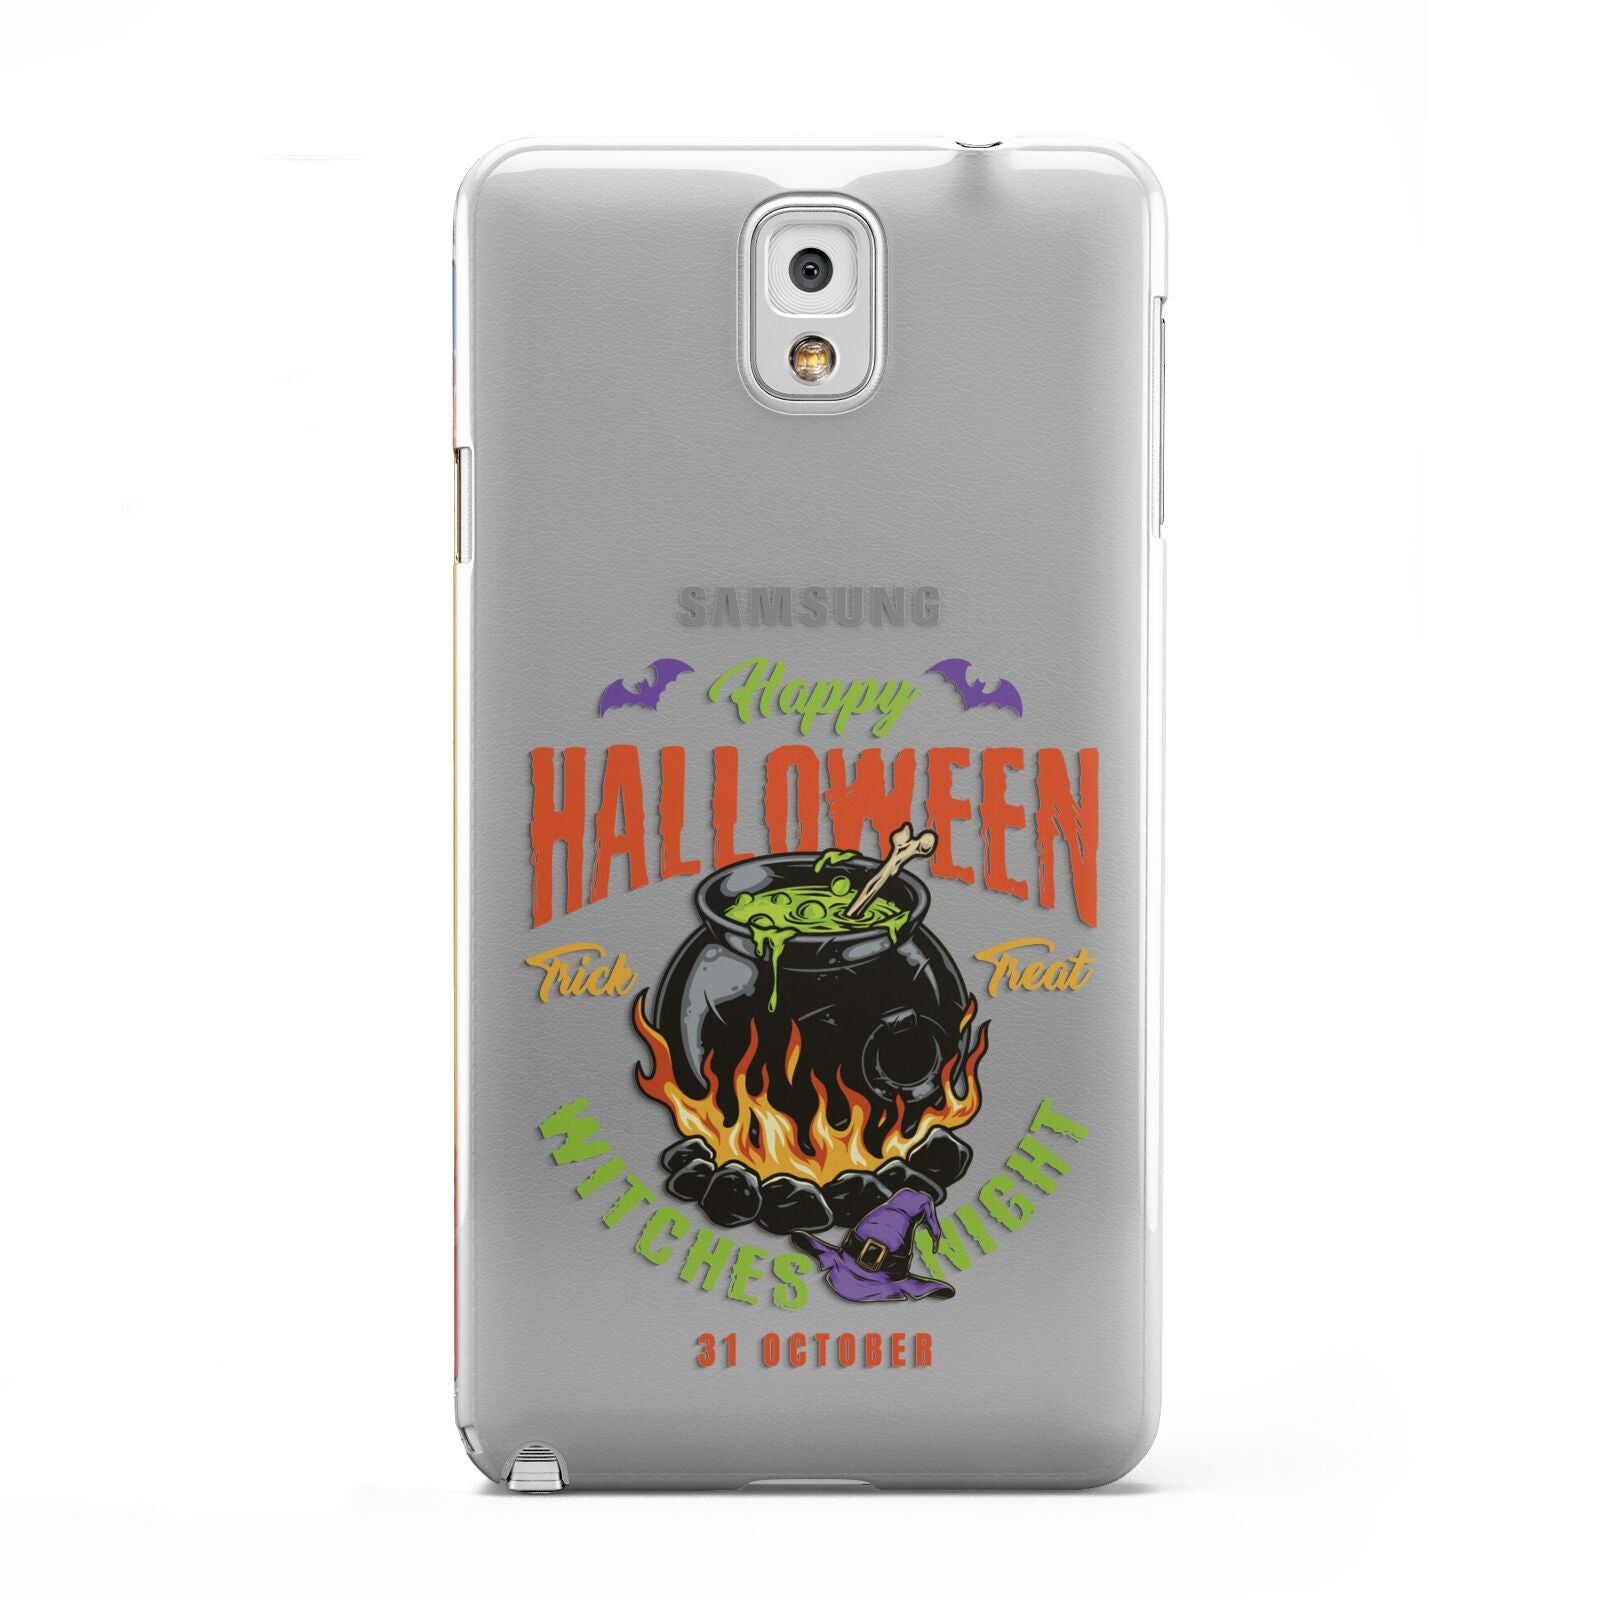 Witch Cauldron Samsung Galaxy Note 3 Case